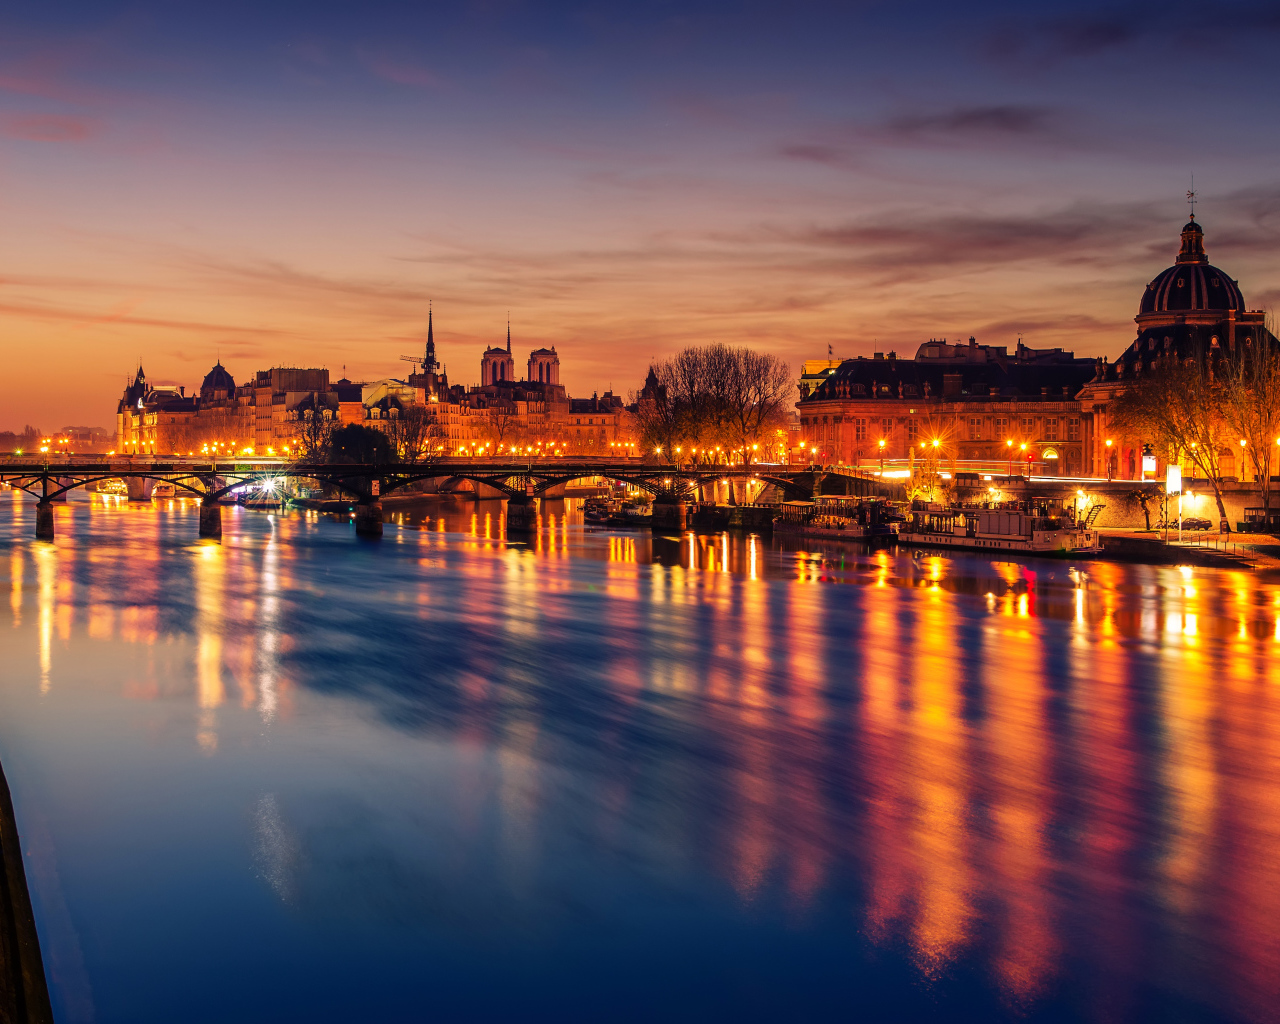 Причал у реки в свете ночных фонарей города Париж, Франция